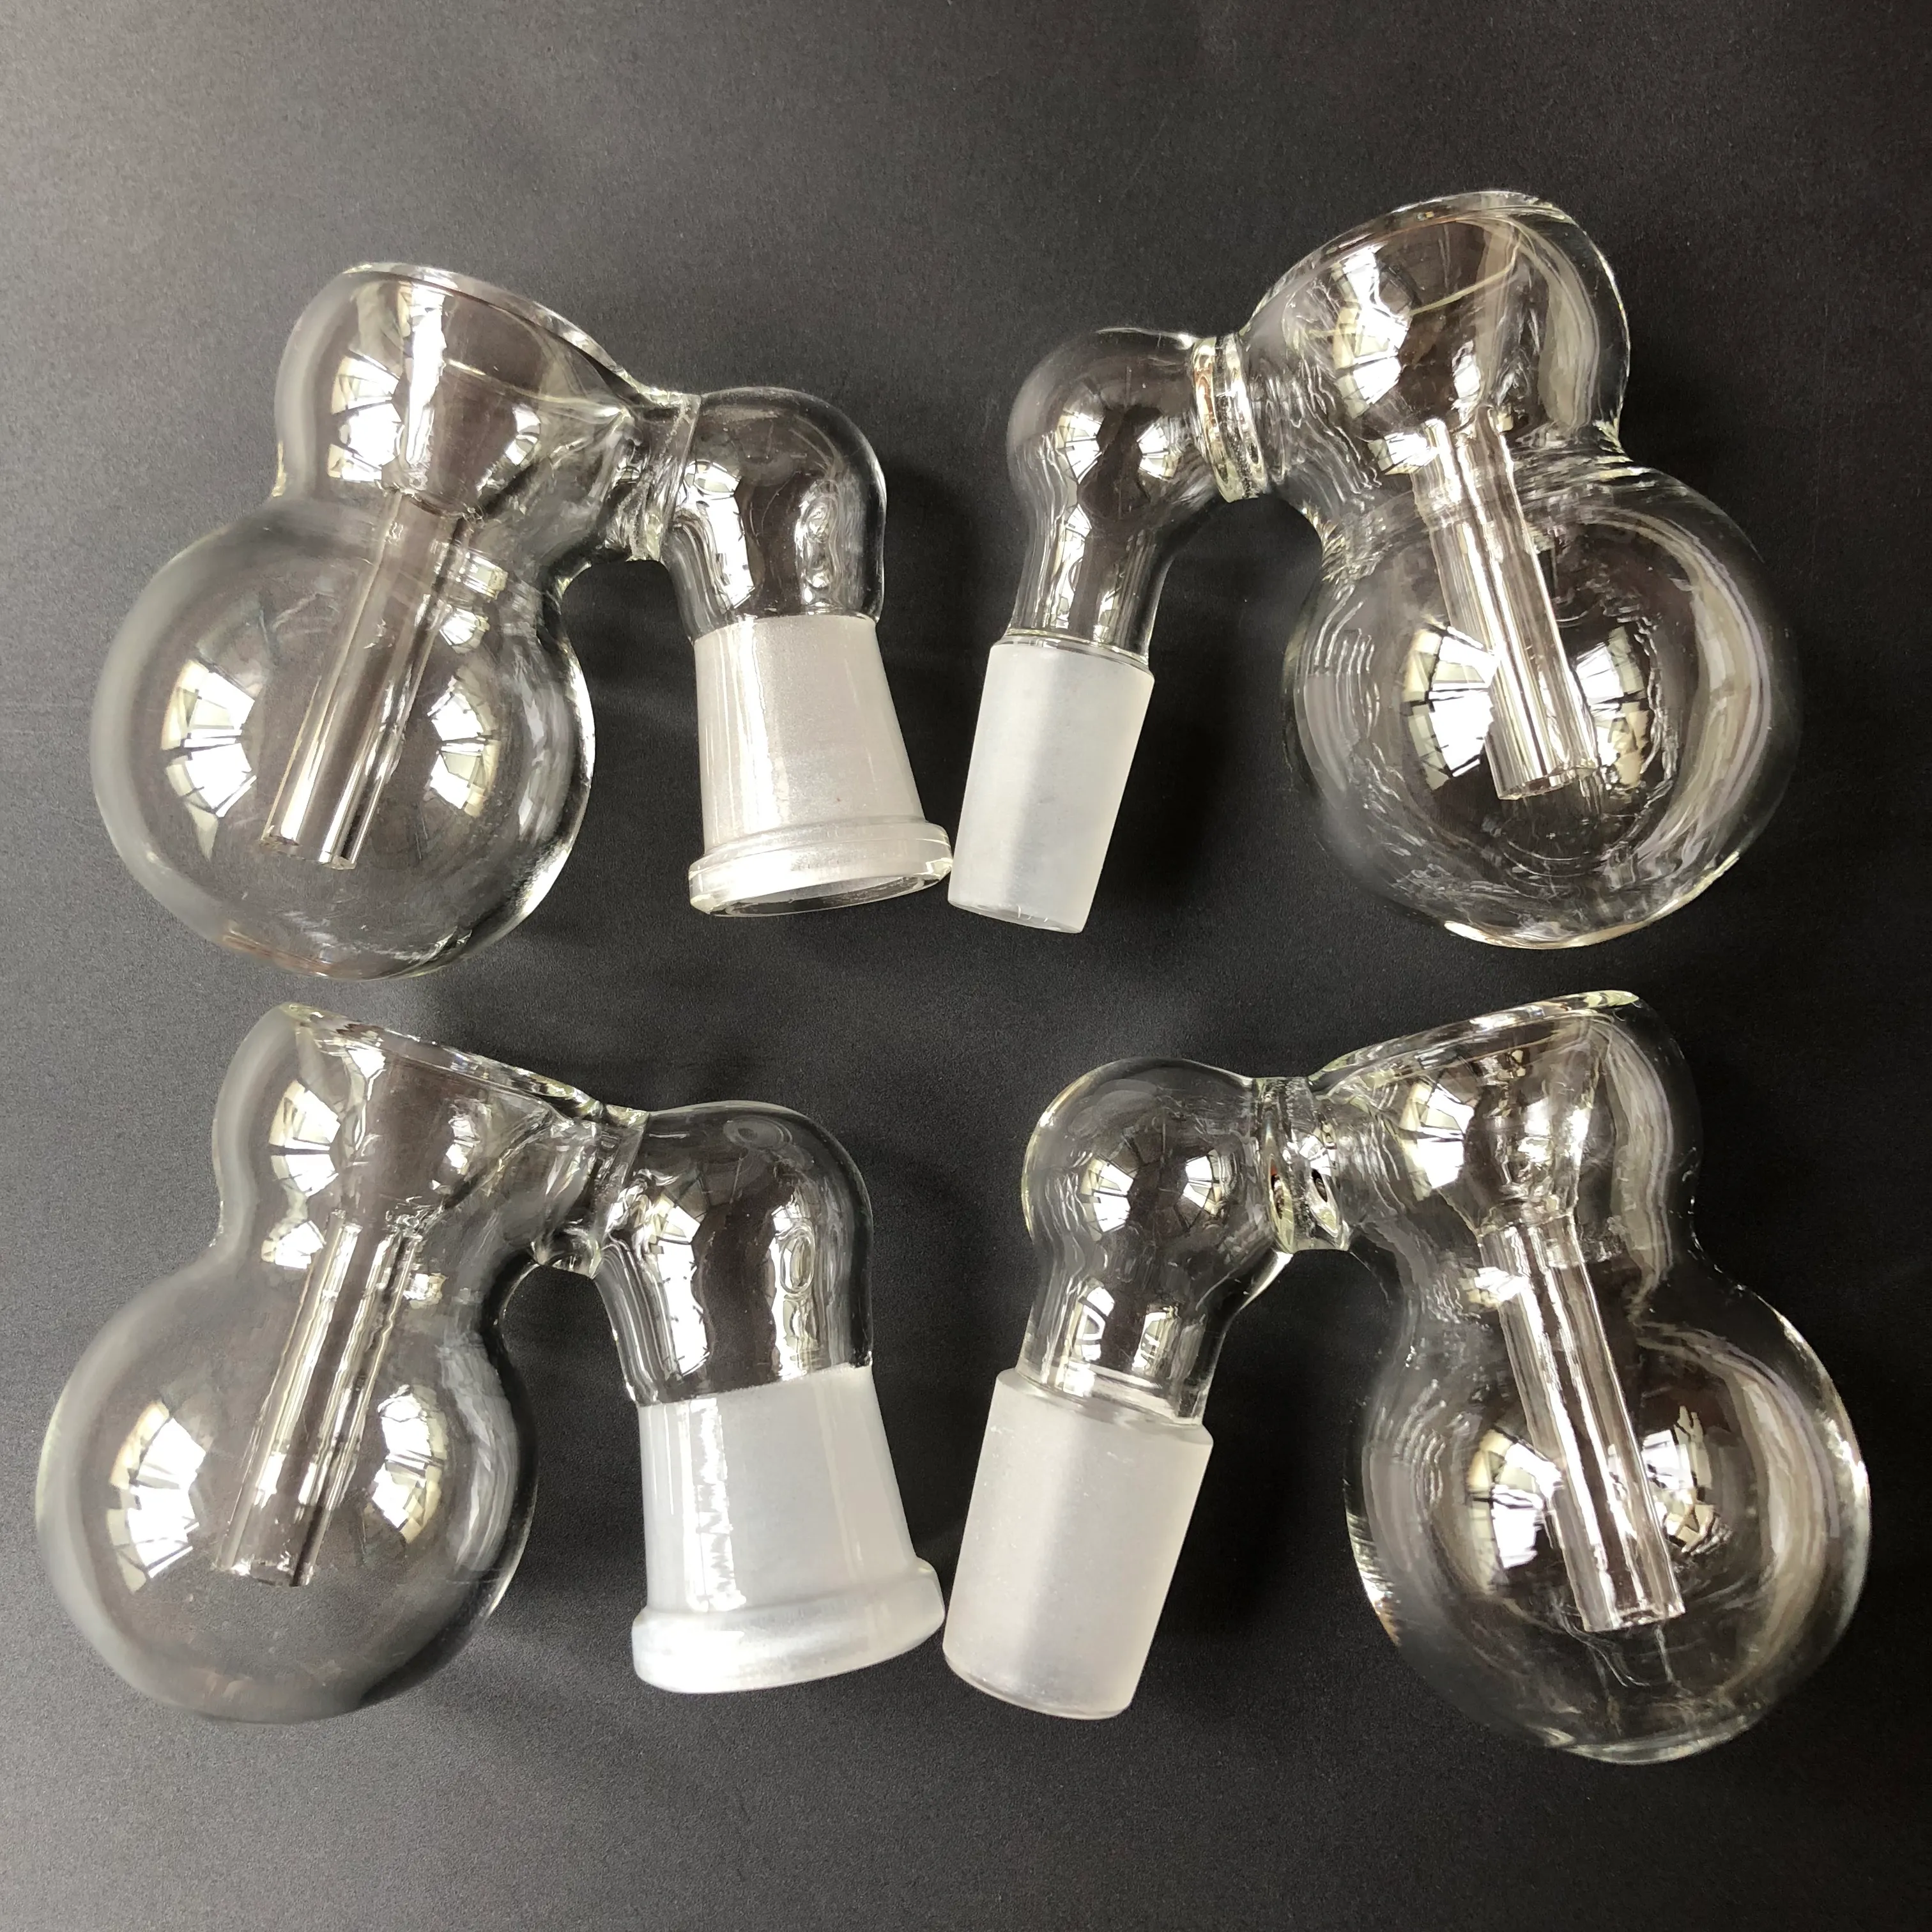 Aschefängerschalen aus Glas mit Bubbler und Kalebasse, männlich weiblich, 10 mm, 14 mm, 18 mm Gelenk, Glas-Perc-Aschenfängerschalen für Glasbongs, Bohrinseln